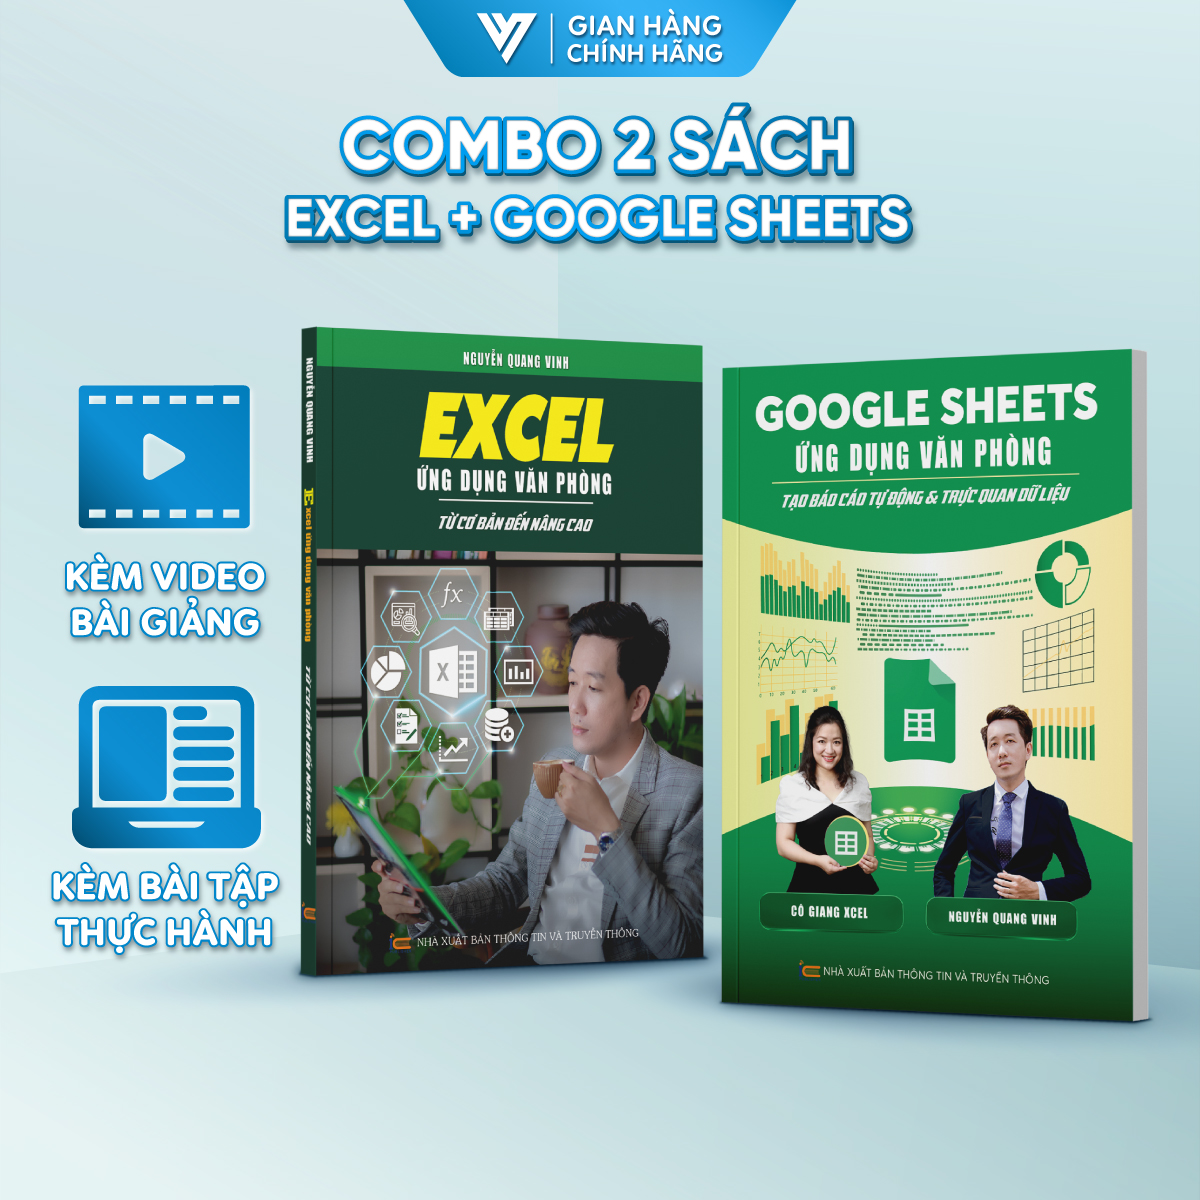 Combo 2 Sách Excel - Google Sheet ĐÀO TẠO TIN HỌC Chuyên Ứng Dụng Văn Phòng Kèm Video Bài Giảng